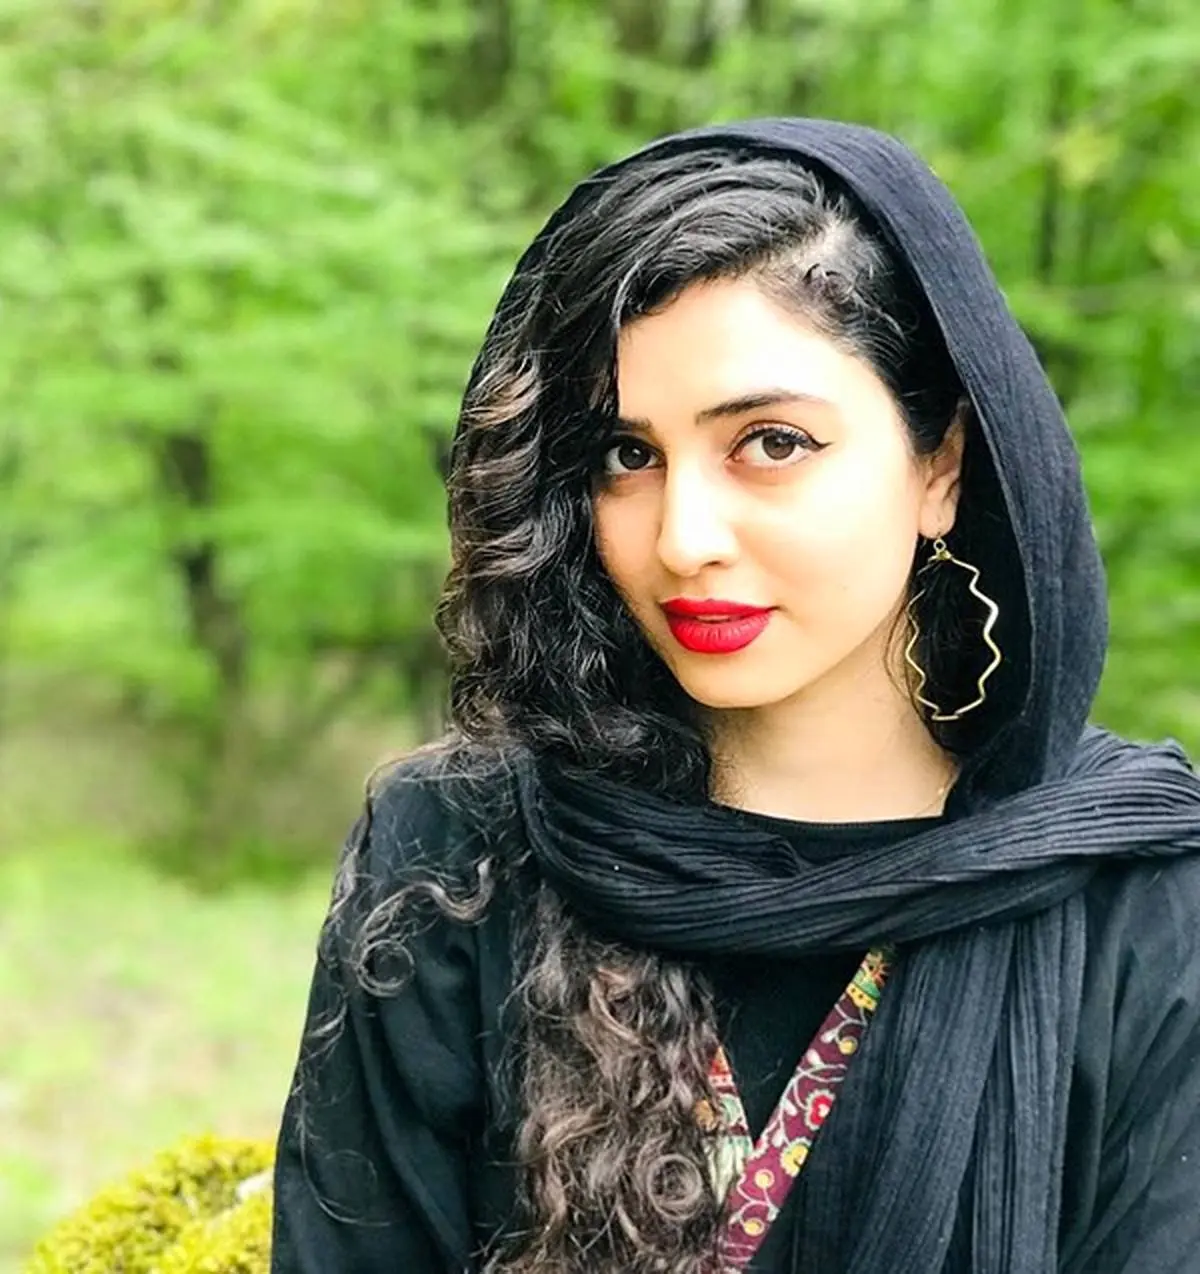 زهره نعیمی | بیوگرافی بازیگر سریال پرگار + تصاویر
